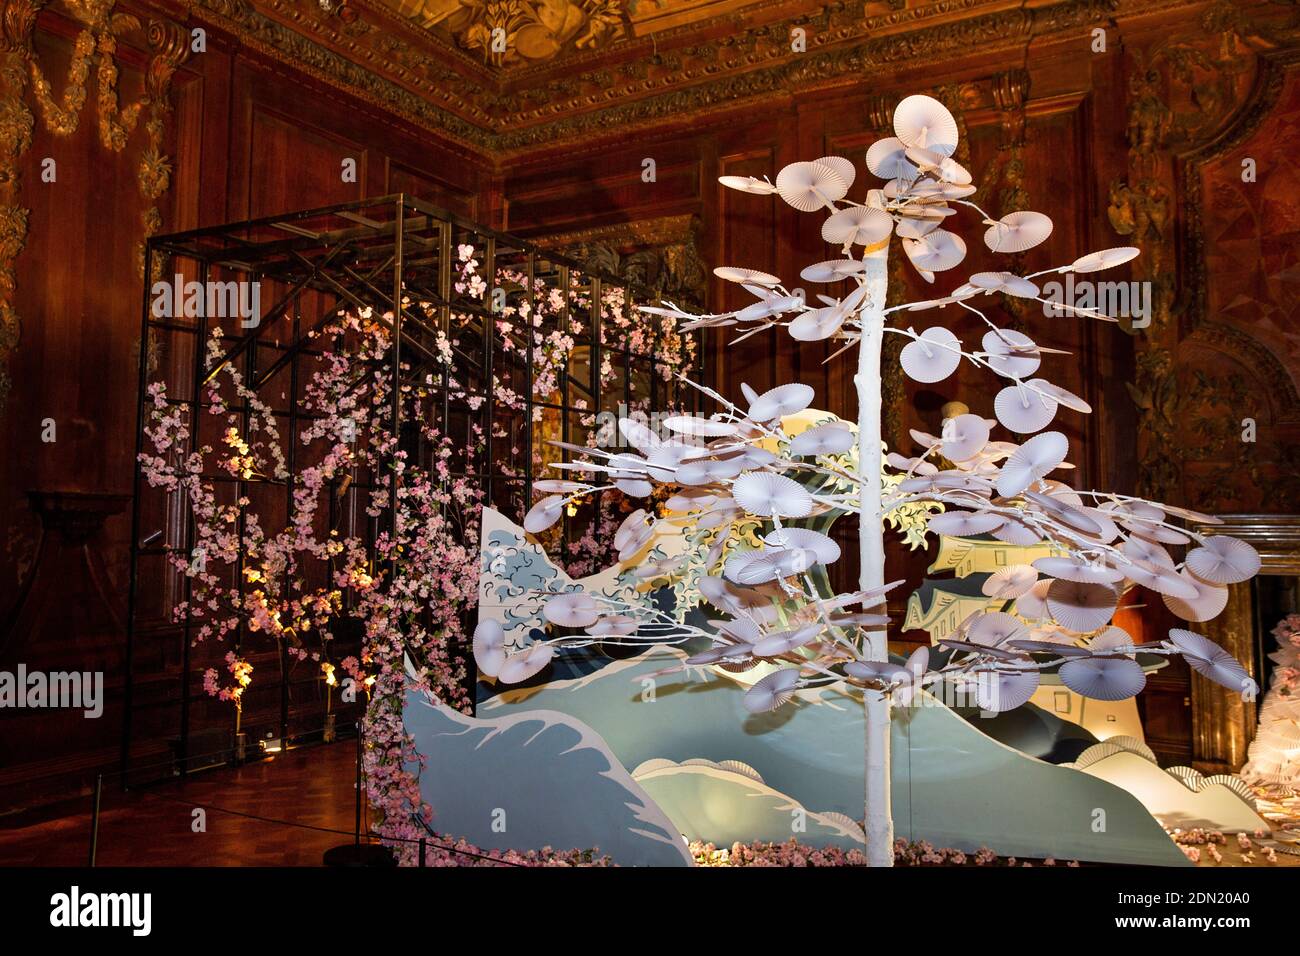 Royaume-Uni, Angleterre, Derbyshire, Edensor, Chatsworth House at Christmas, Lands Away, Japon, Hokusai vague et fleur de cerisier avec arbre de ventilateur Banque D'Images